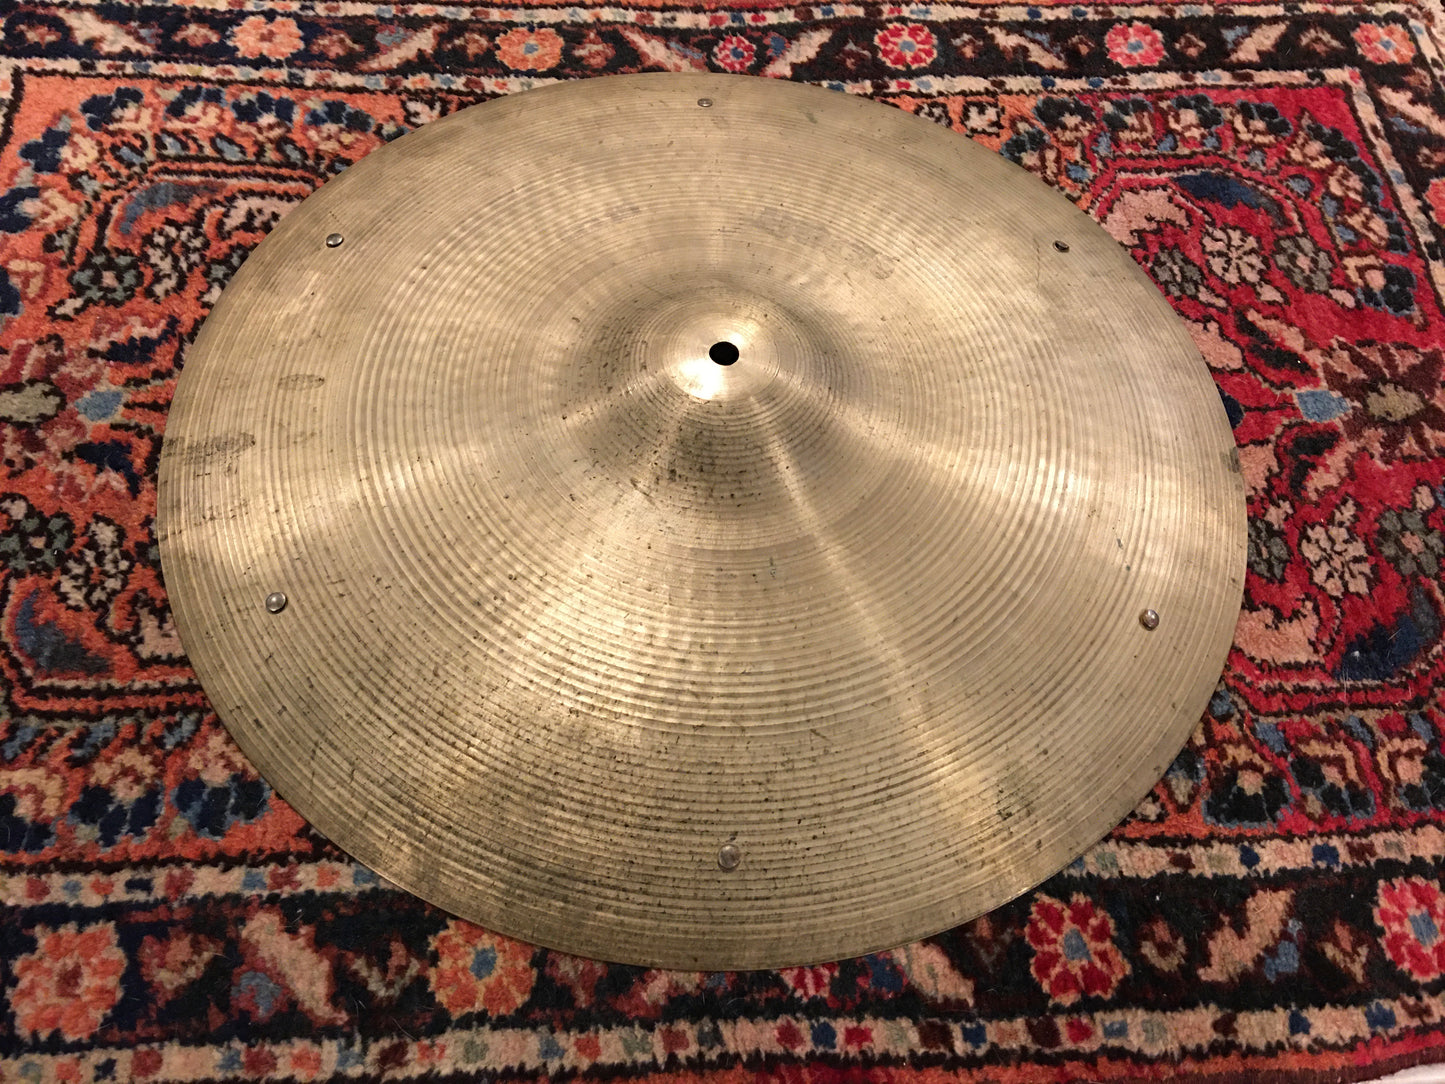 19" Zildjian A 1970s Crash / Ride Cymbal w/ Rivets 1904g #635